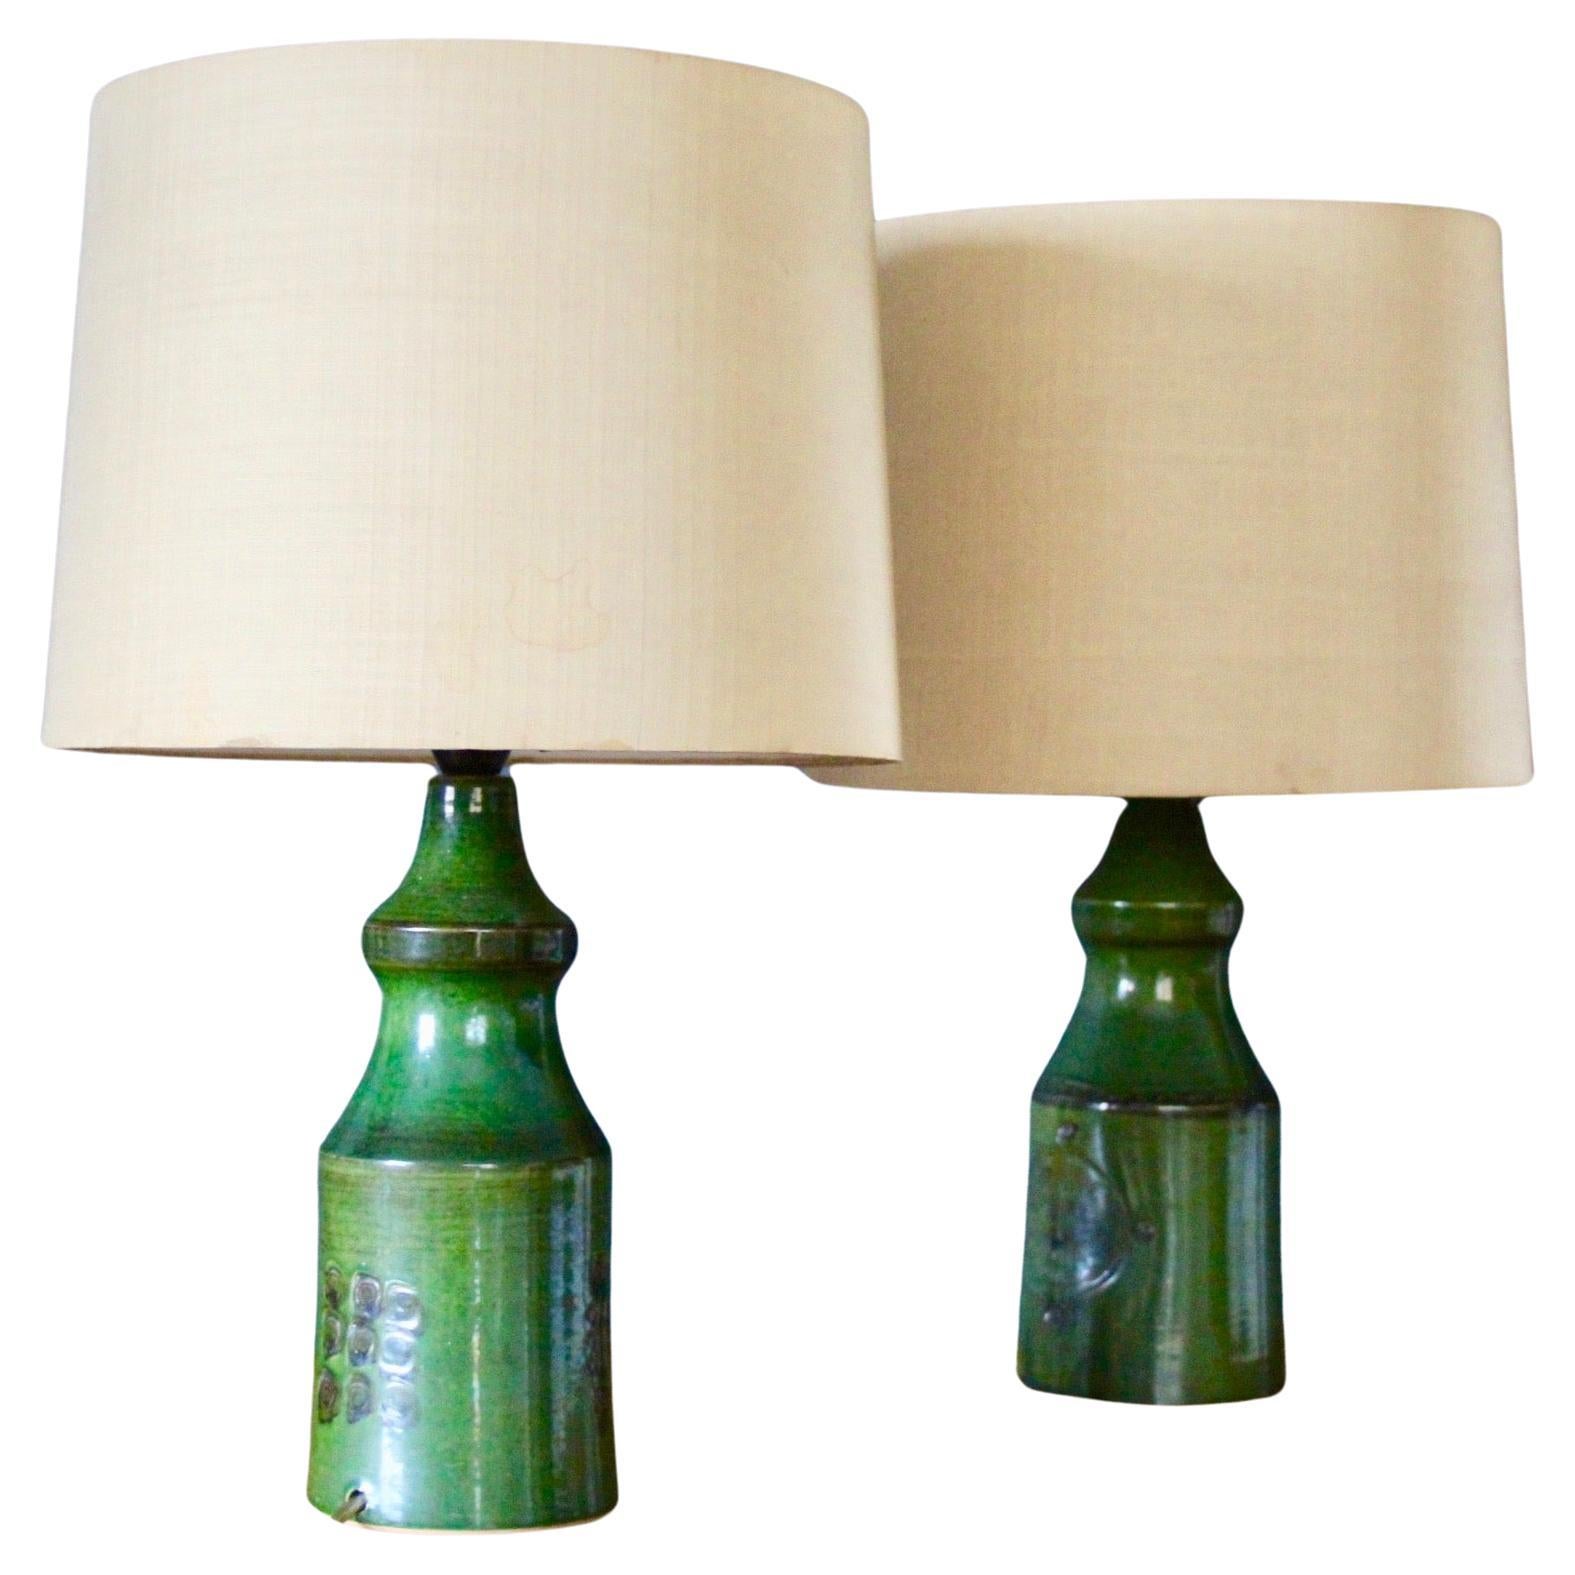 Pair of green ceramic danish table lamp